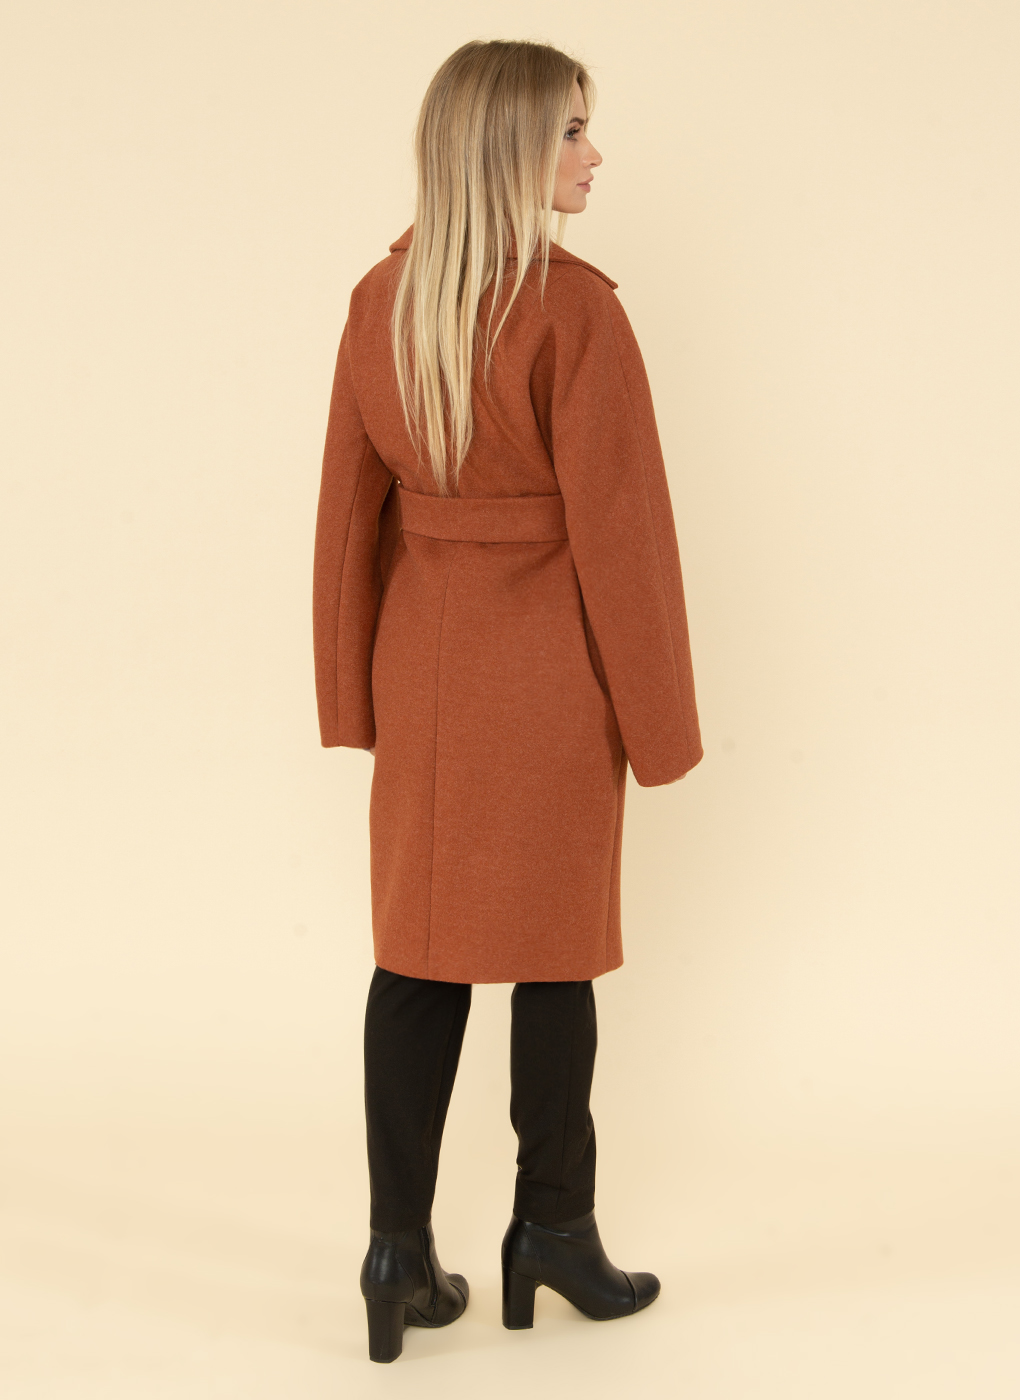 Пальто женское Sezalto 41799 коричневое 44 RU